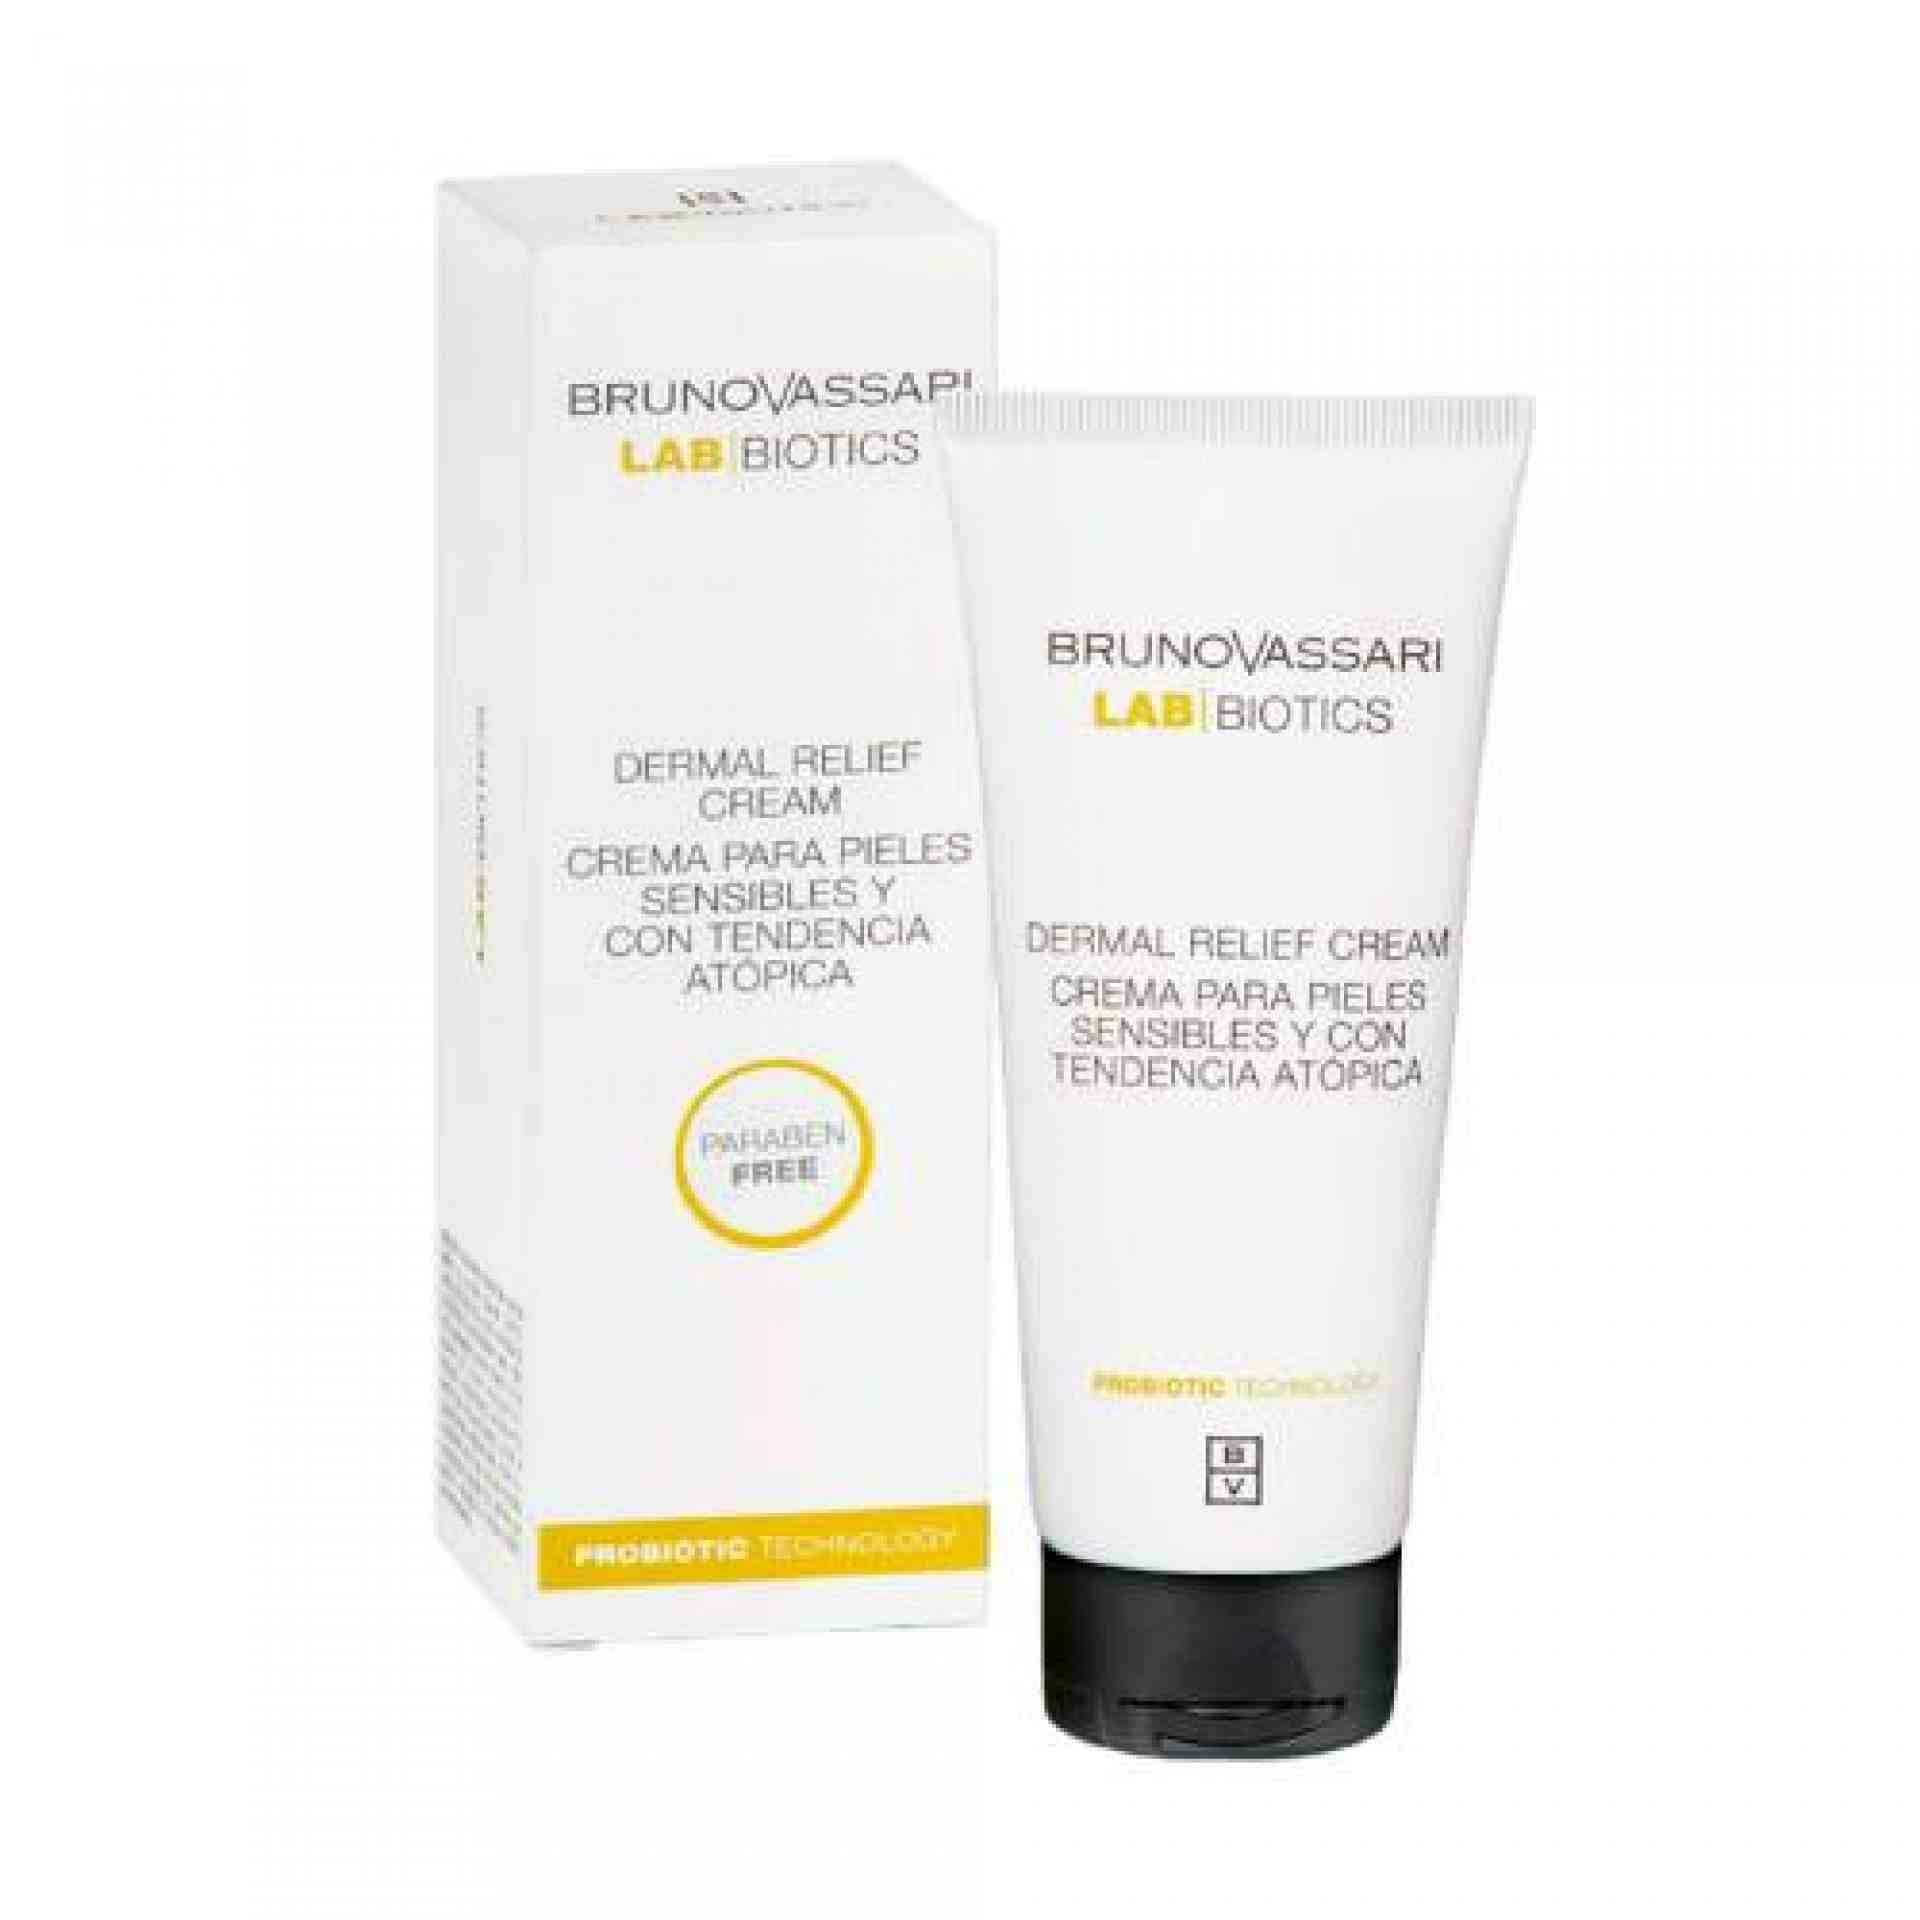 Dermal Relief Cream | Crema facial 100ml - Lab Biotics - Bruno Vassari ®